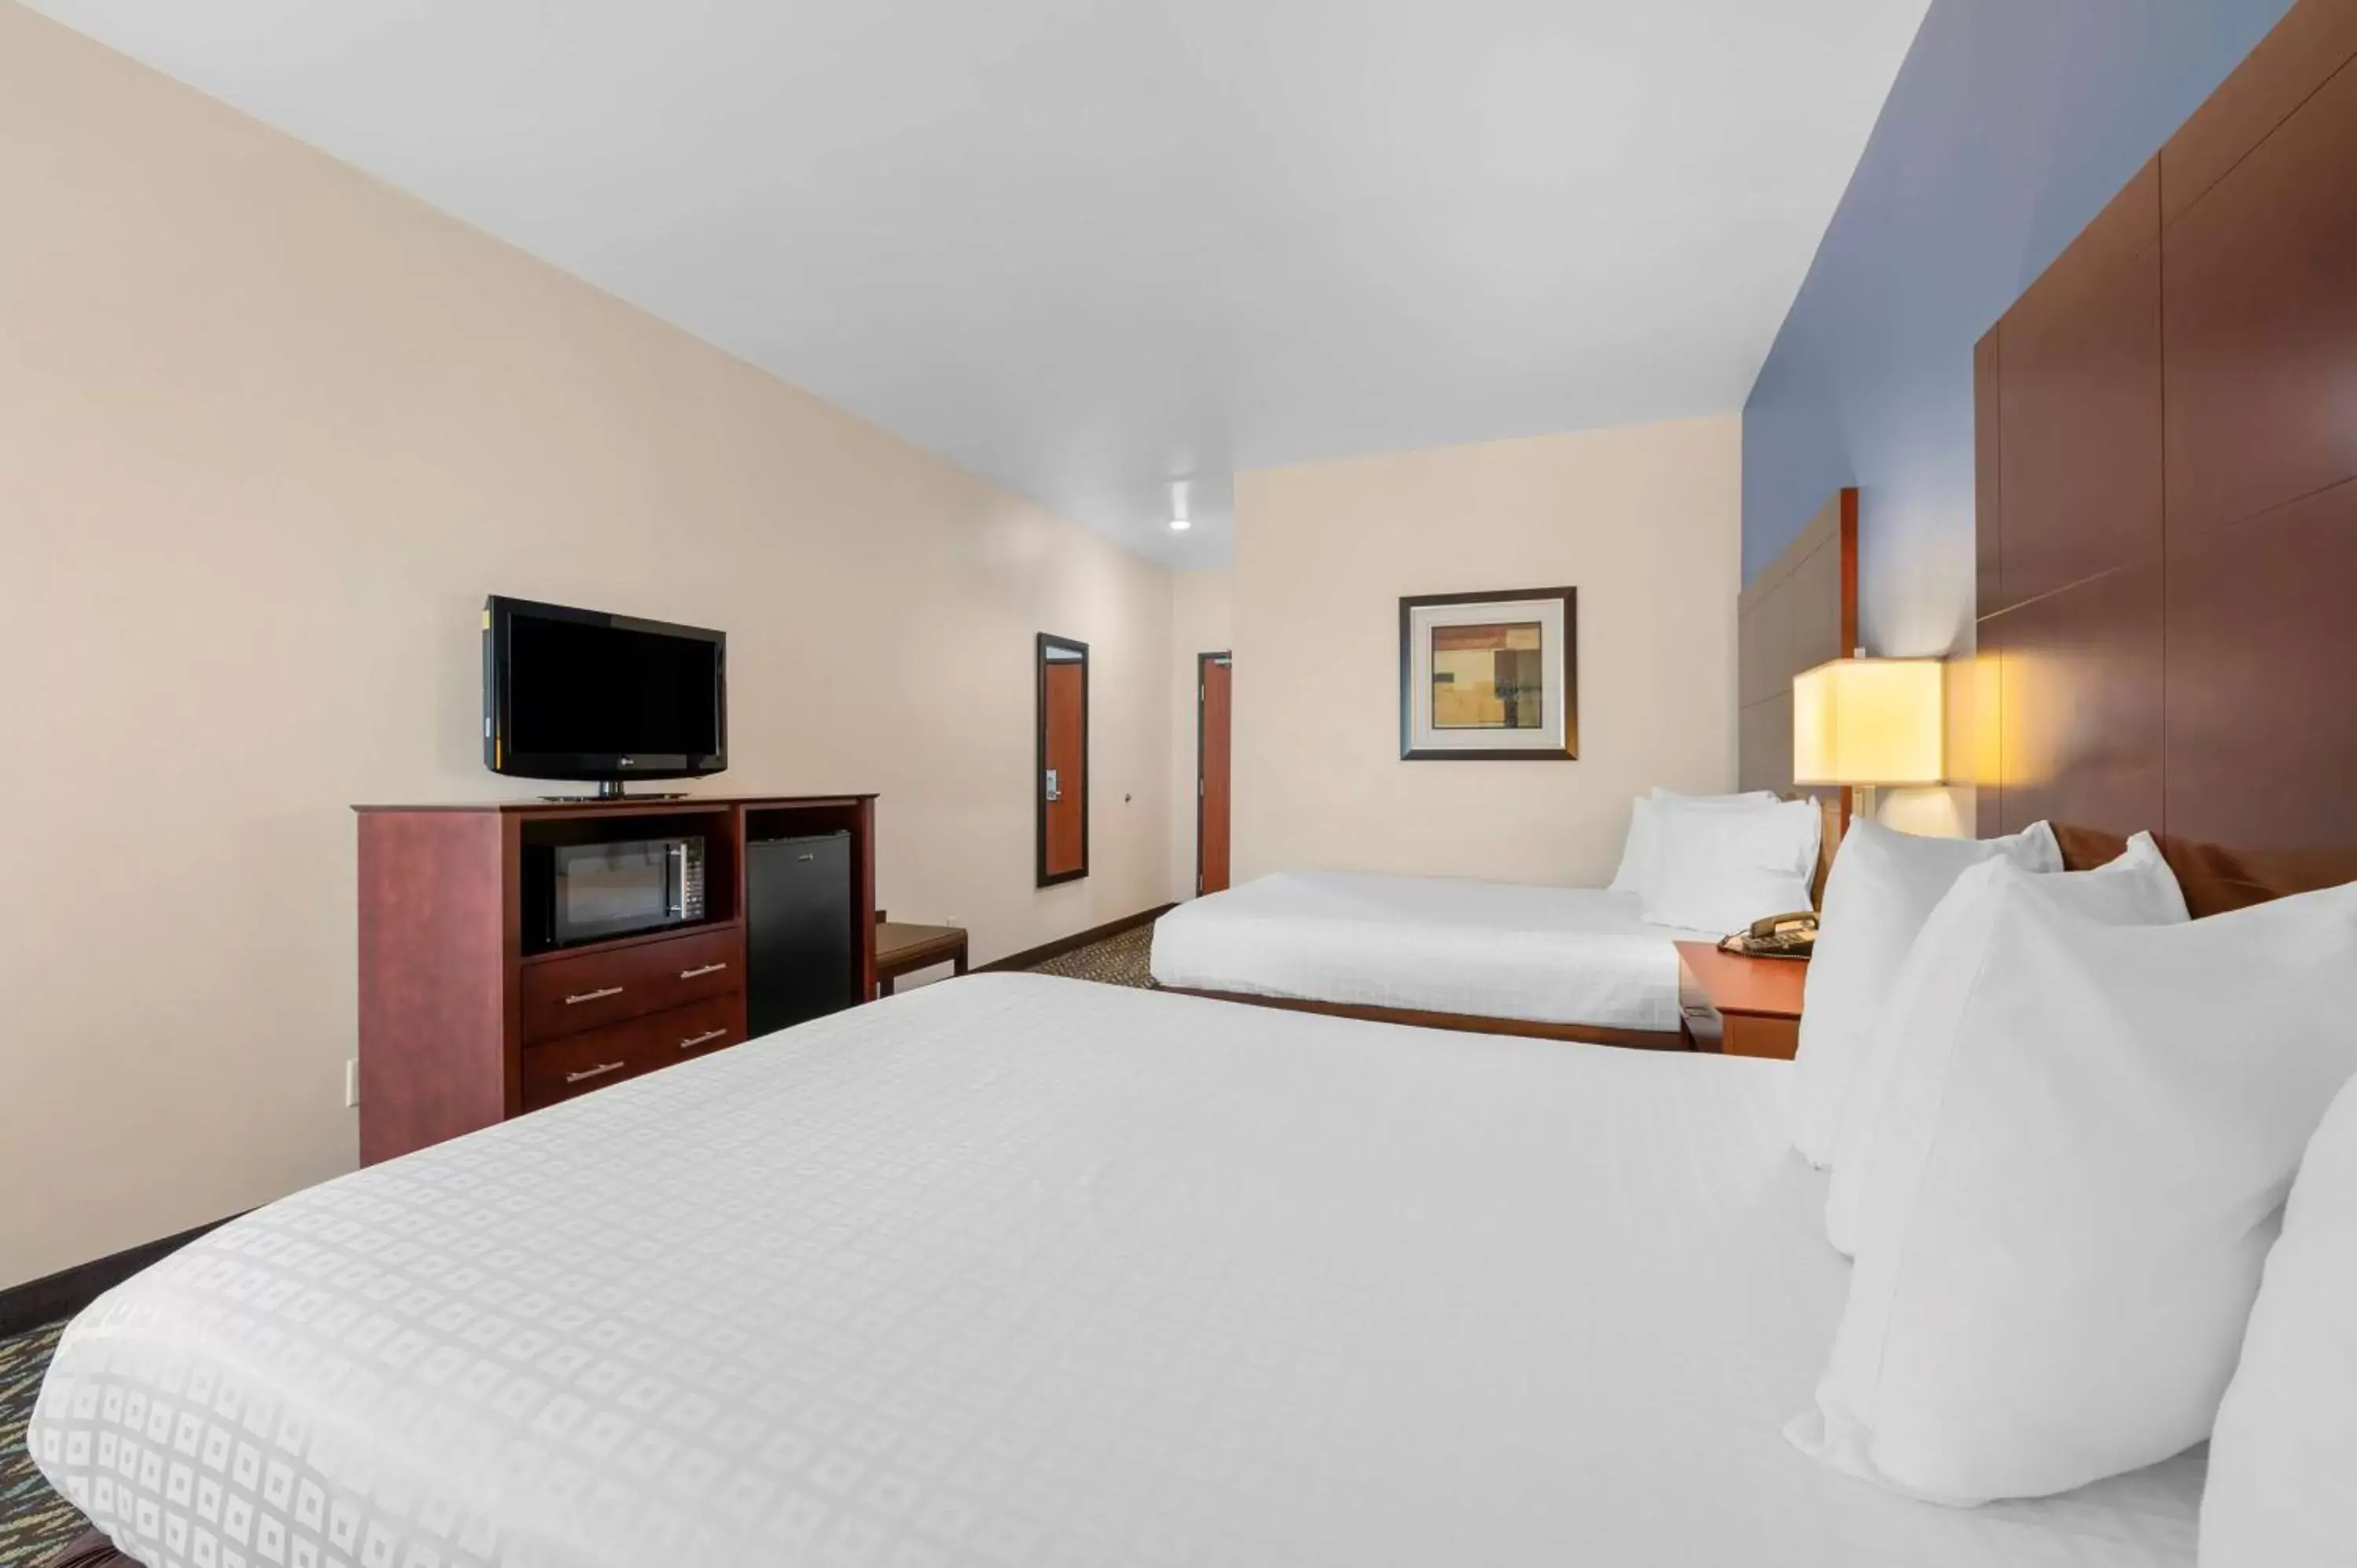 Bedroom, Bed in Best Western Plus Covered Bridge Inn